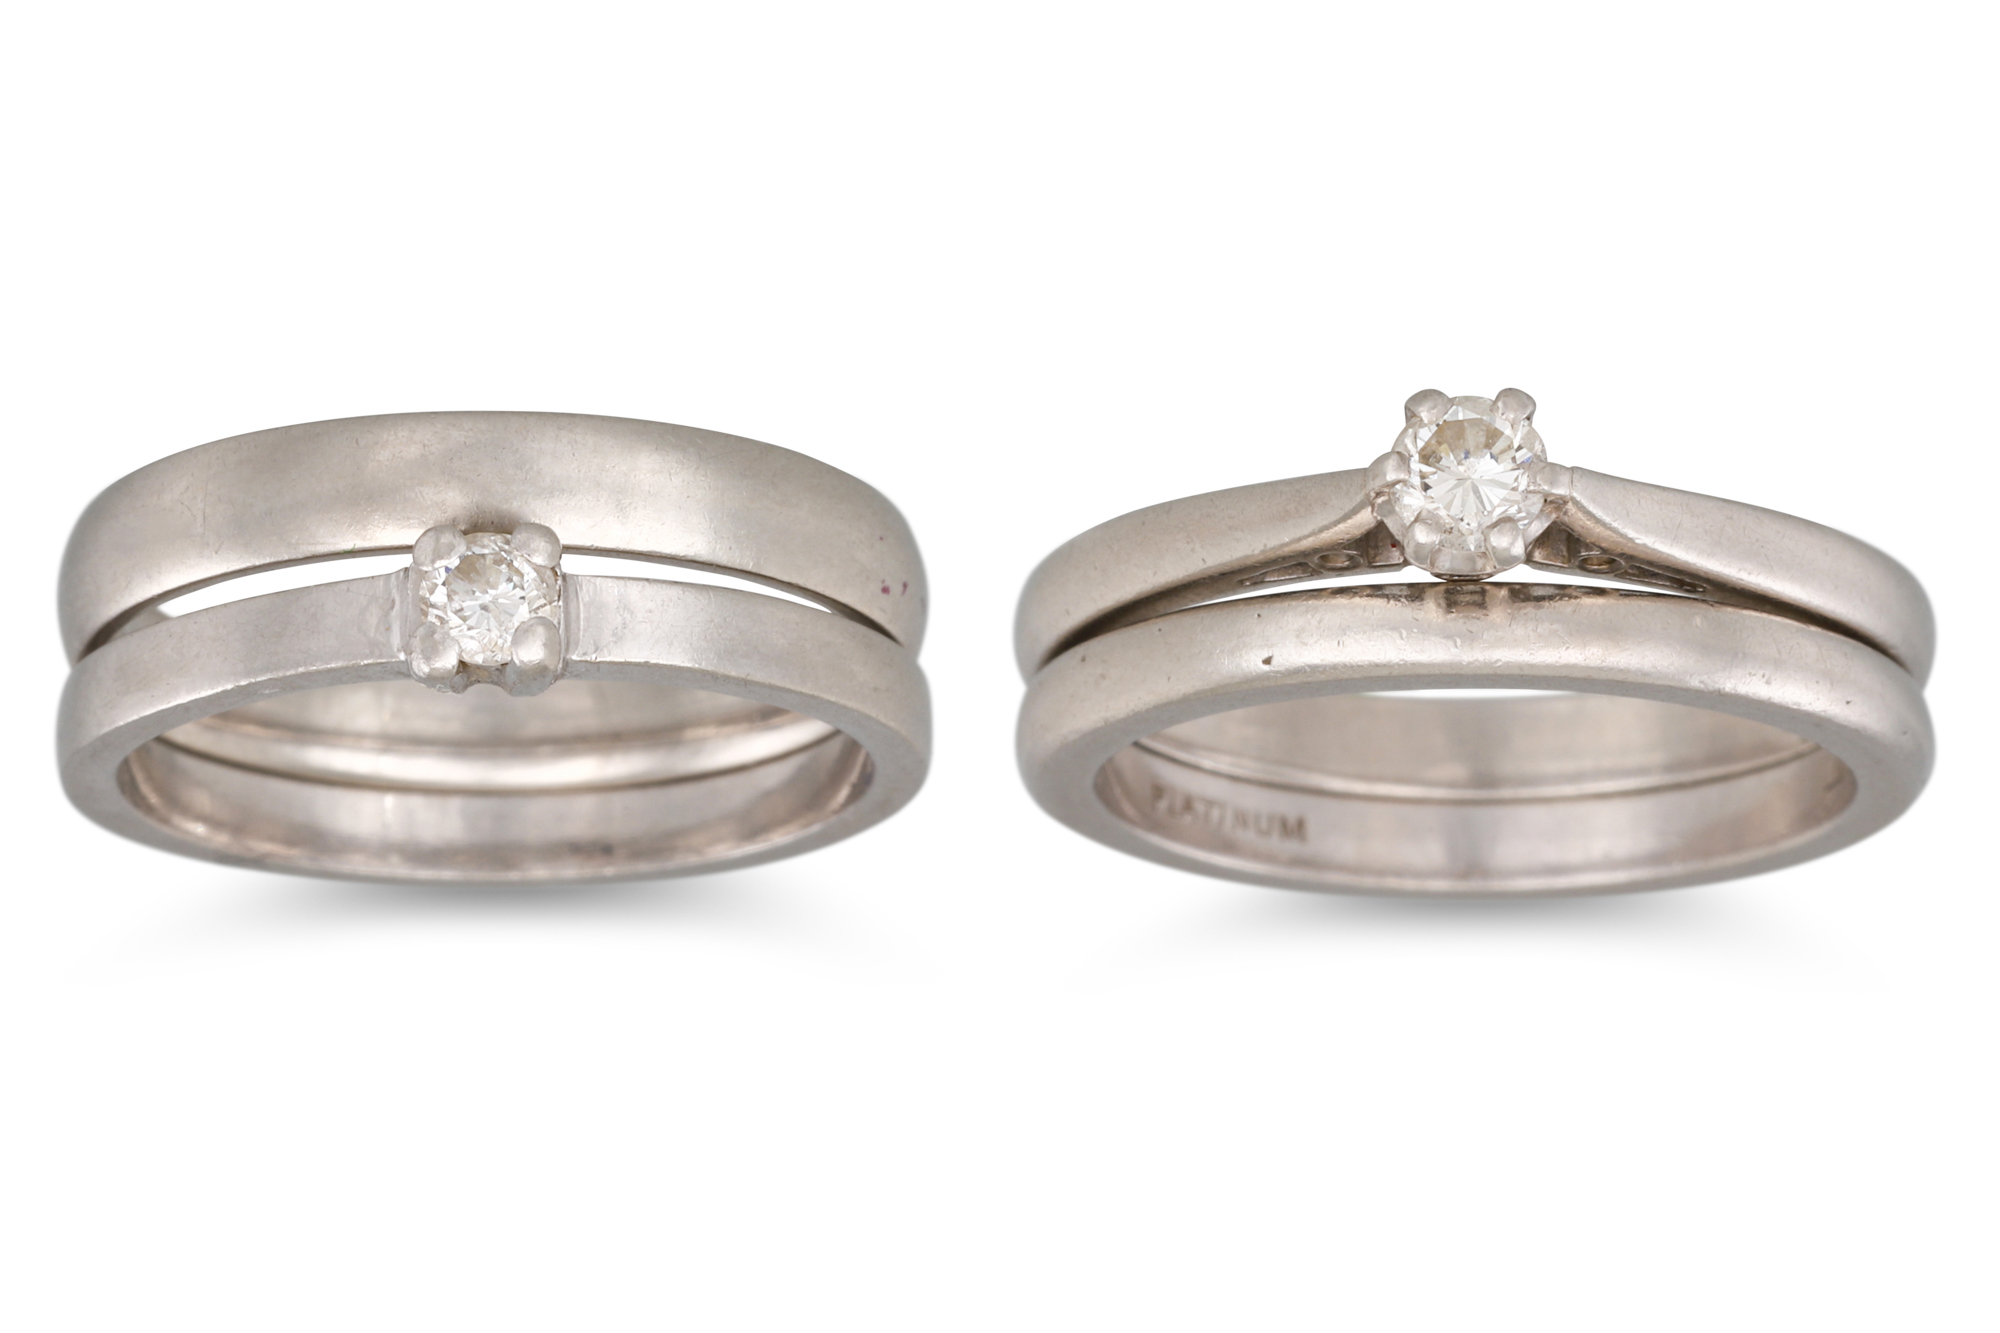 FOUR PLATINUM RINGS, 2 diamond set, 15.1 g. Sizes: K-L and L